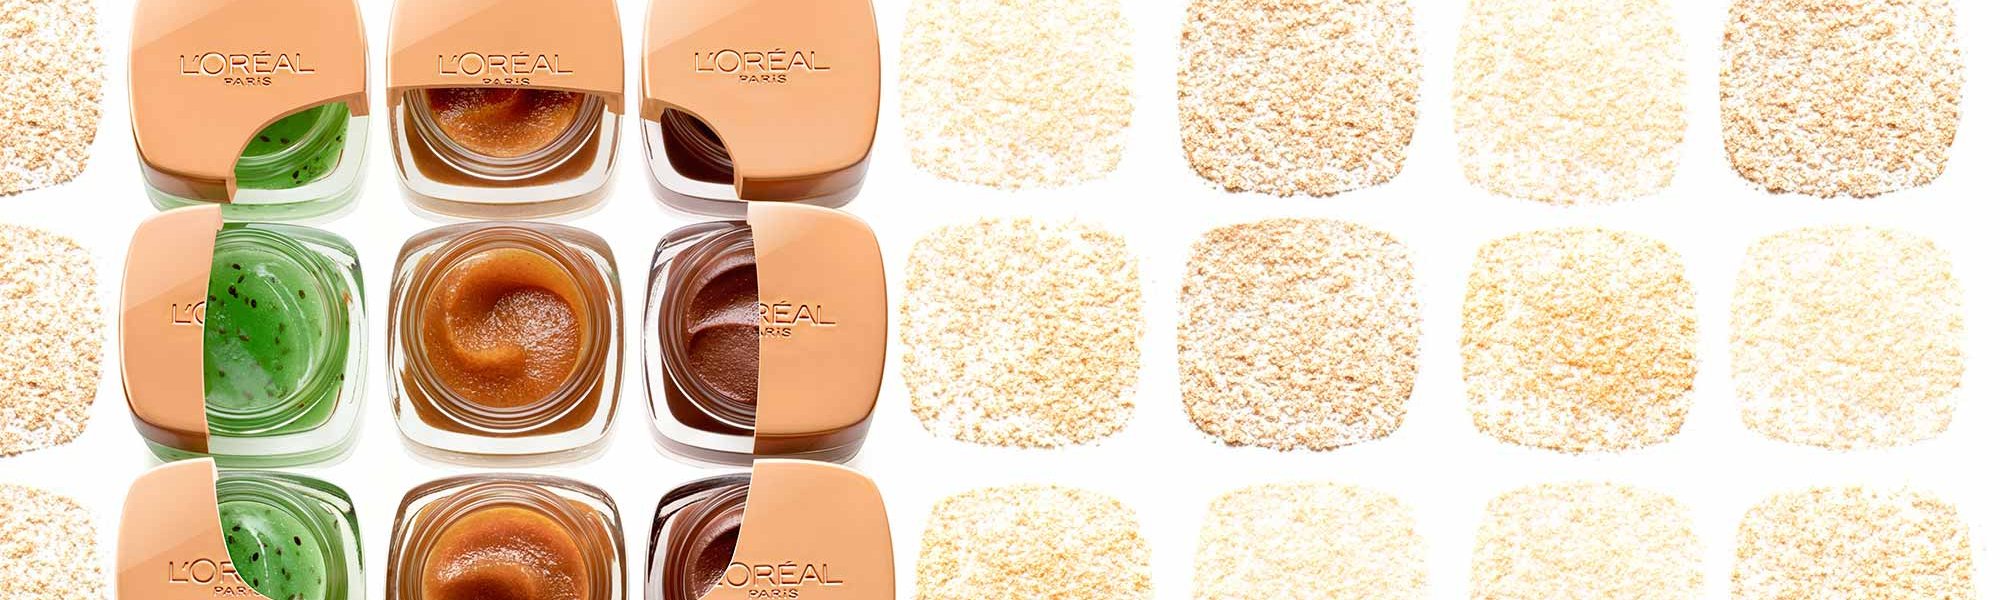 Sugar Scrubs Tiegel von L'Oréal Paris vor einem gemusterten Hintergrund